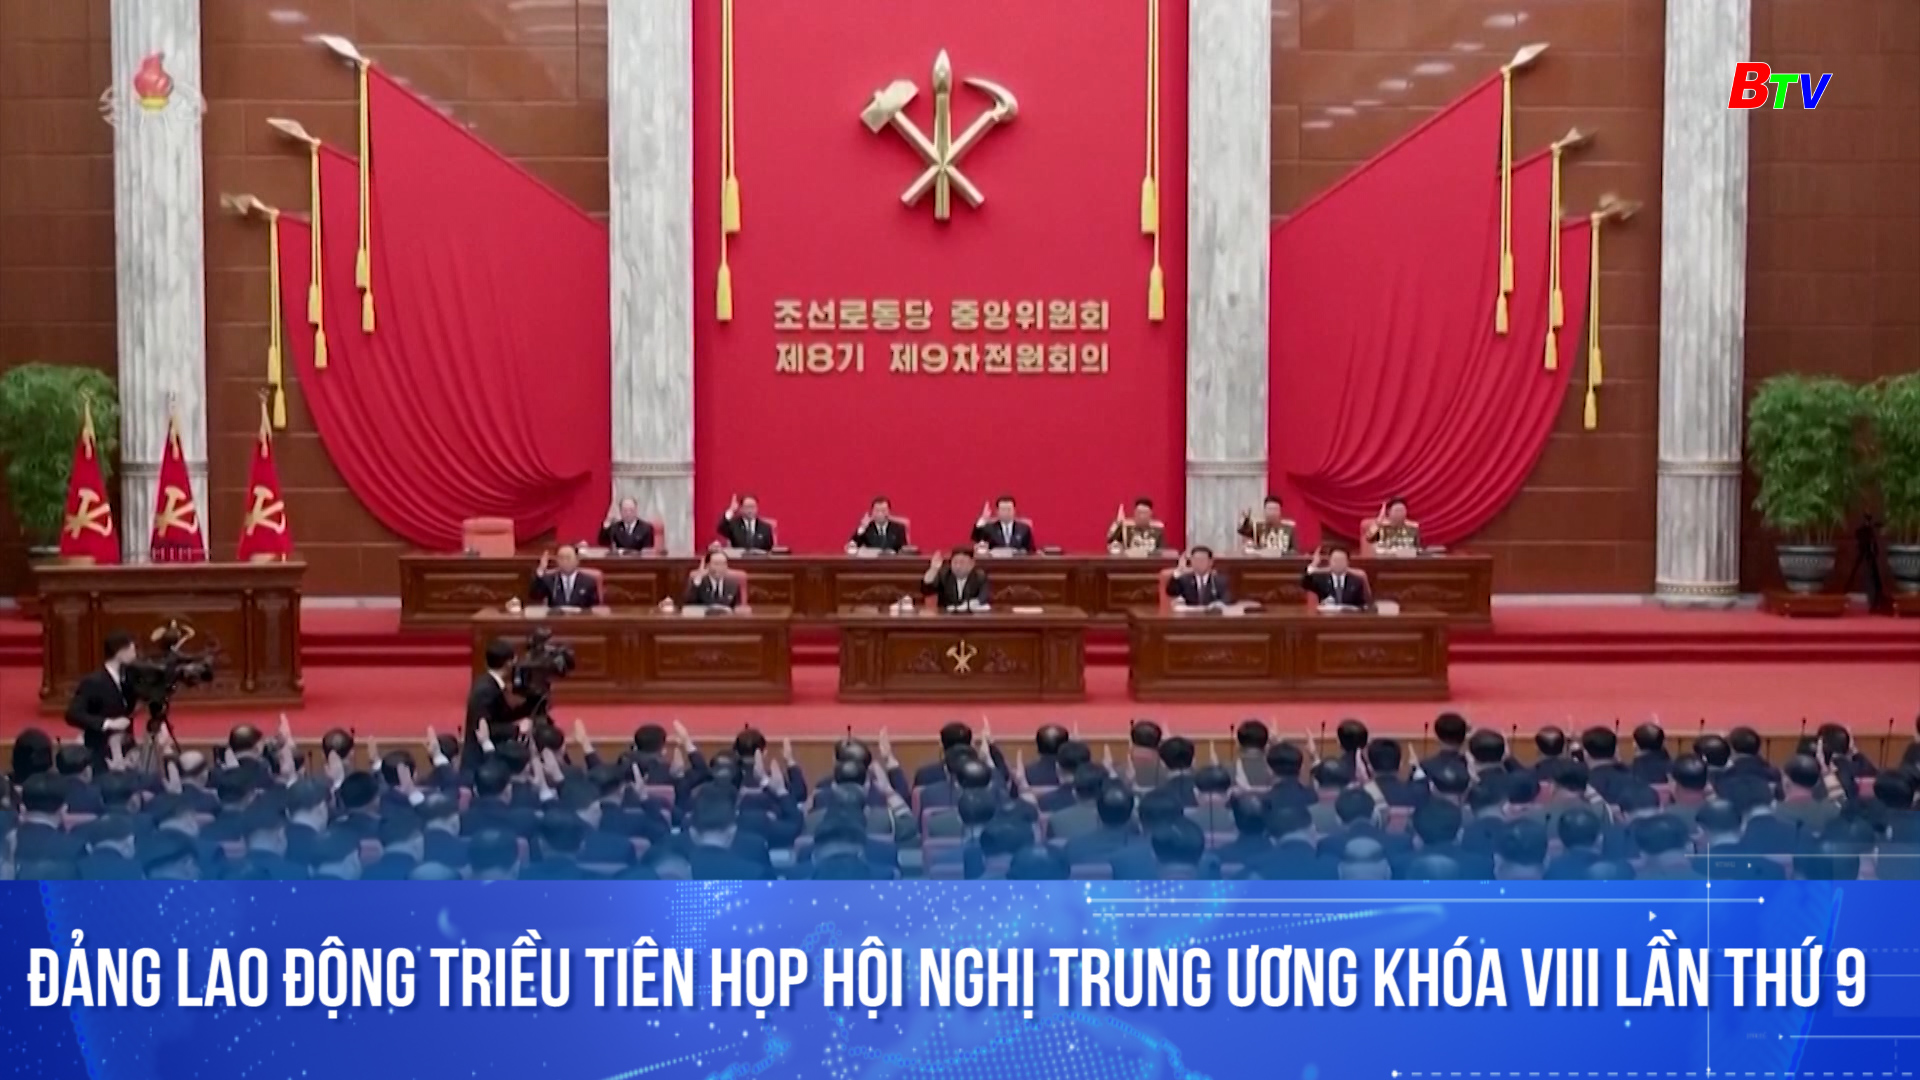 Đảng Lao động Triều Tiên họp Hội nghị Trung ương khóa VIII lần thứ 9